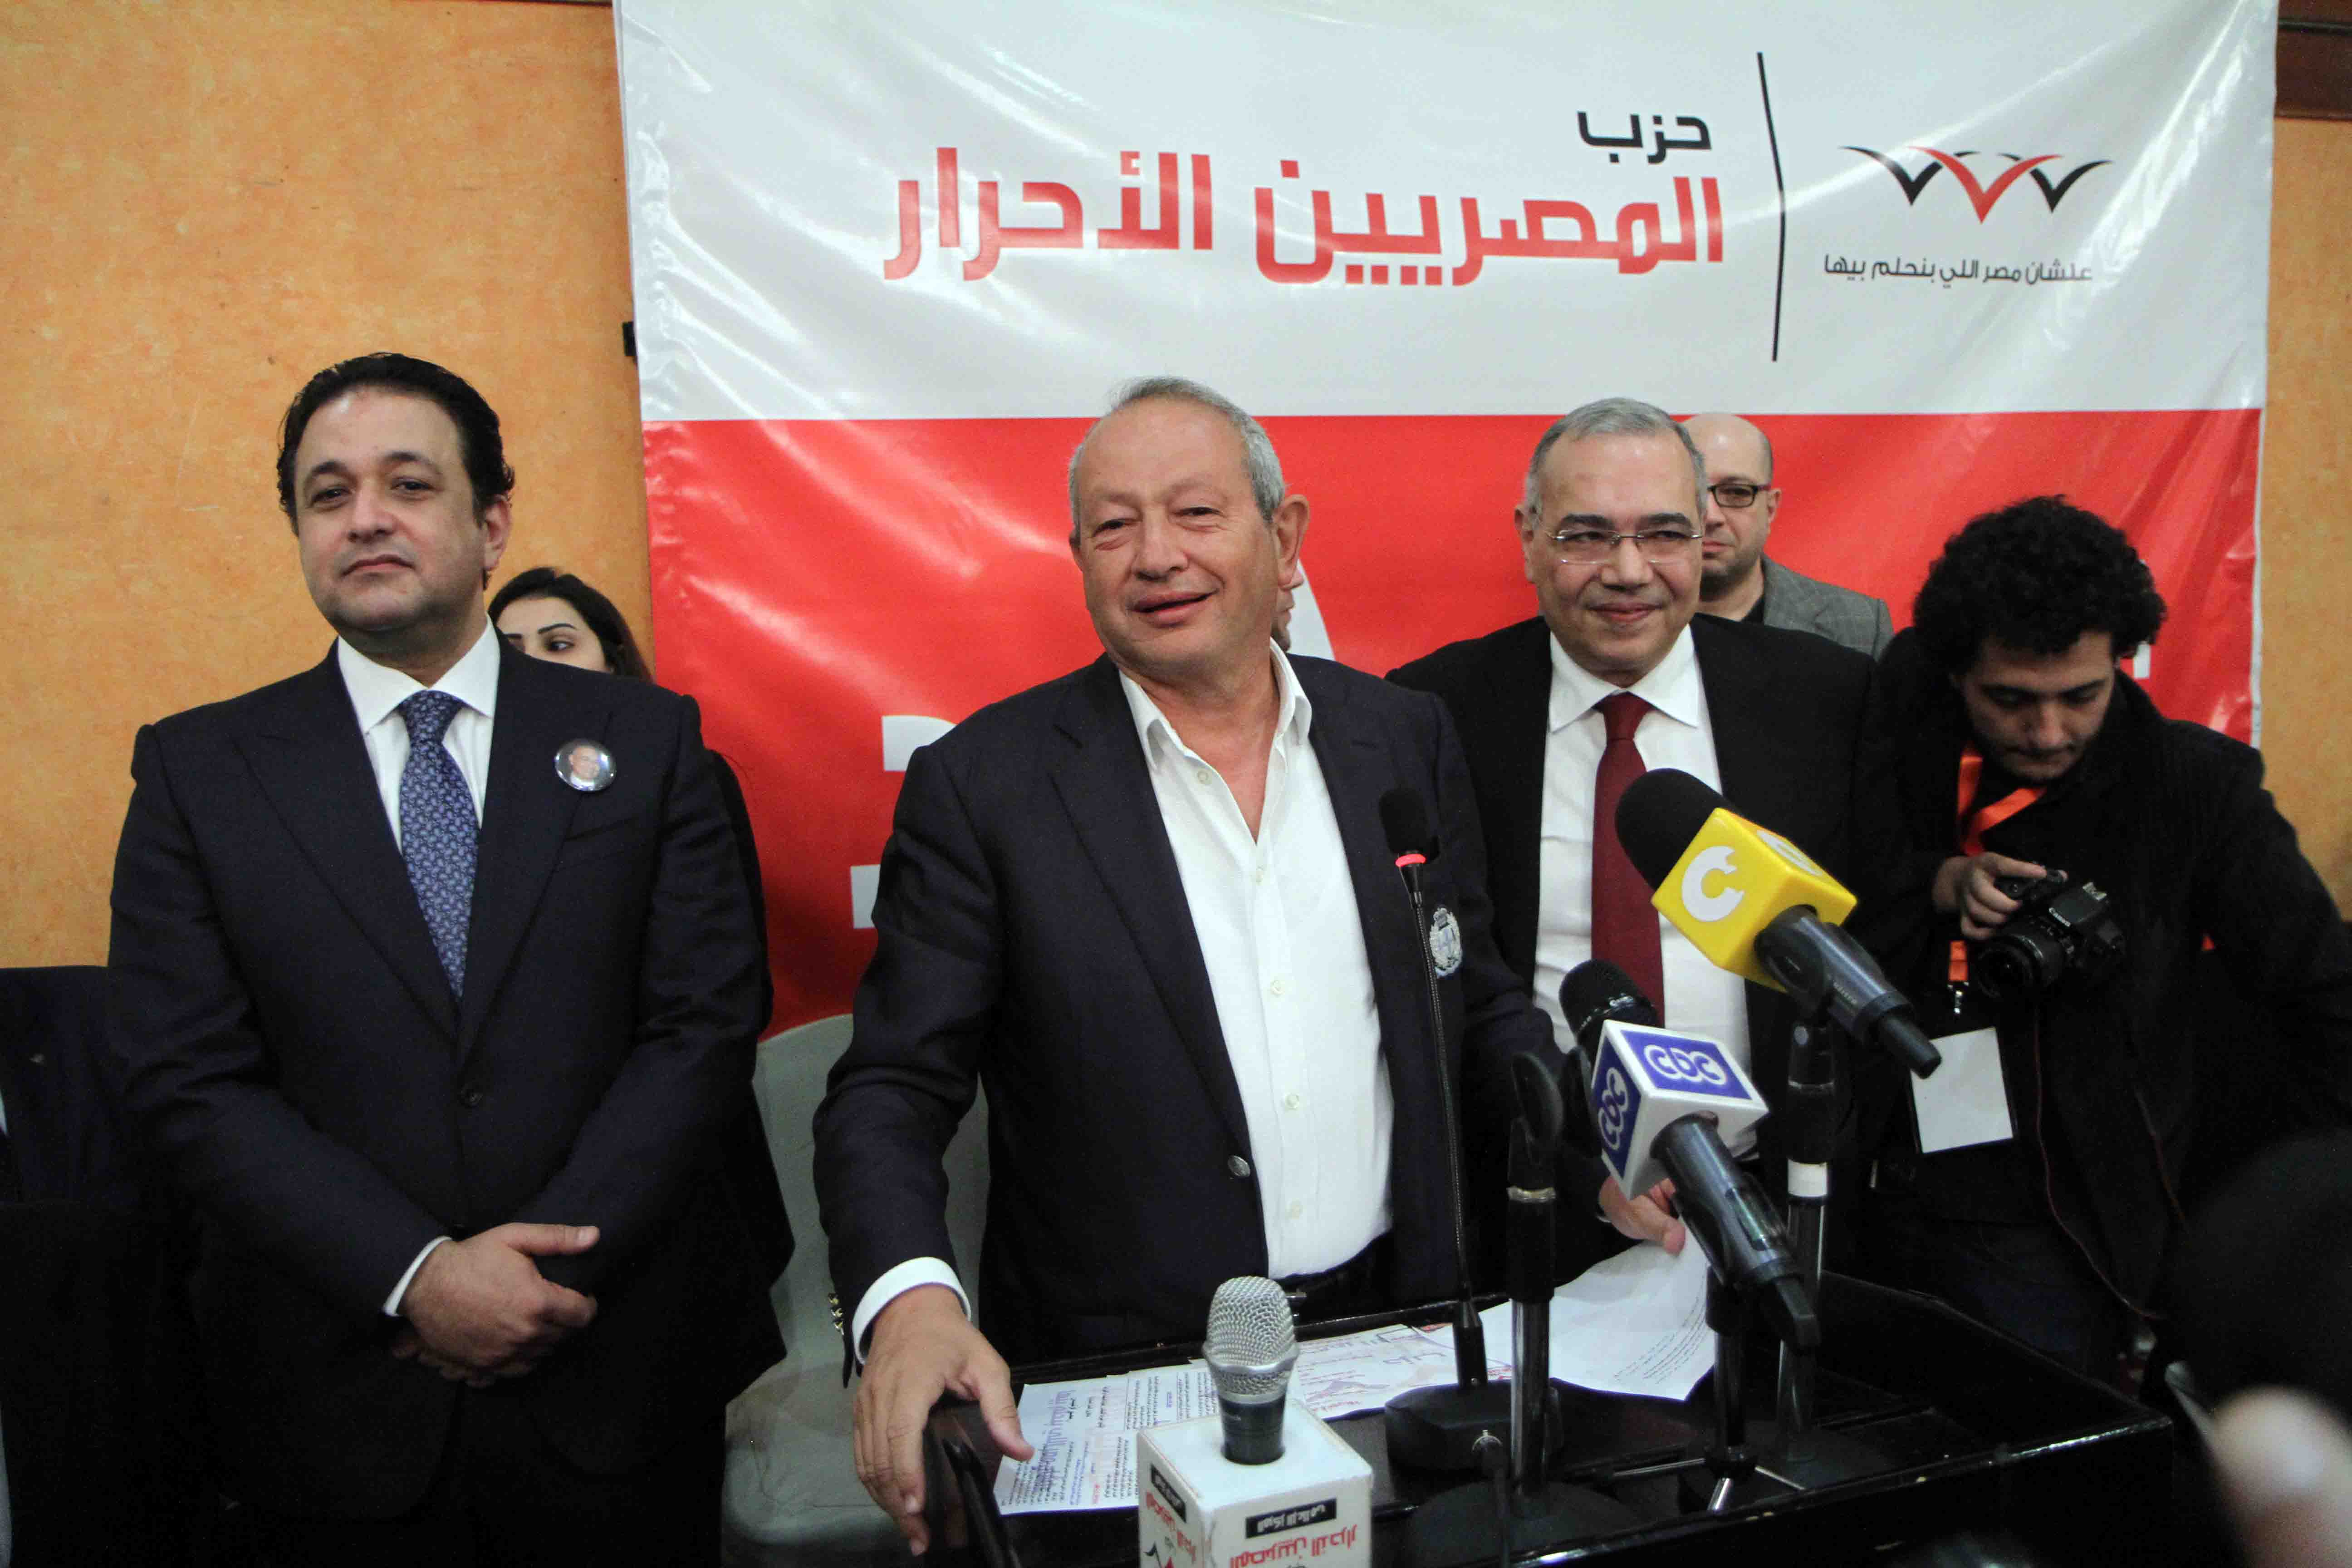 فوز عصام خليل بانتخابات المصريين الاحرار حسن محمد 31-12-2015 (17)